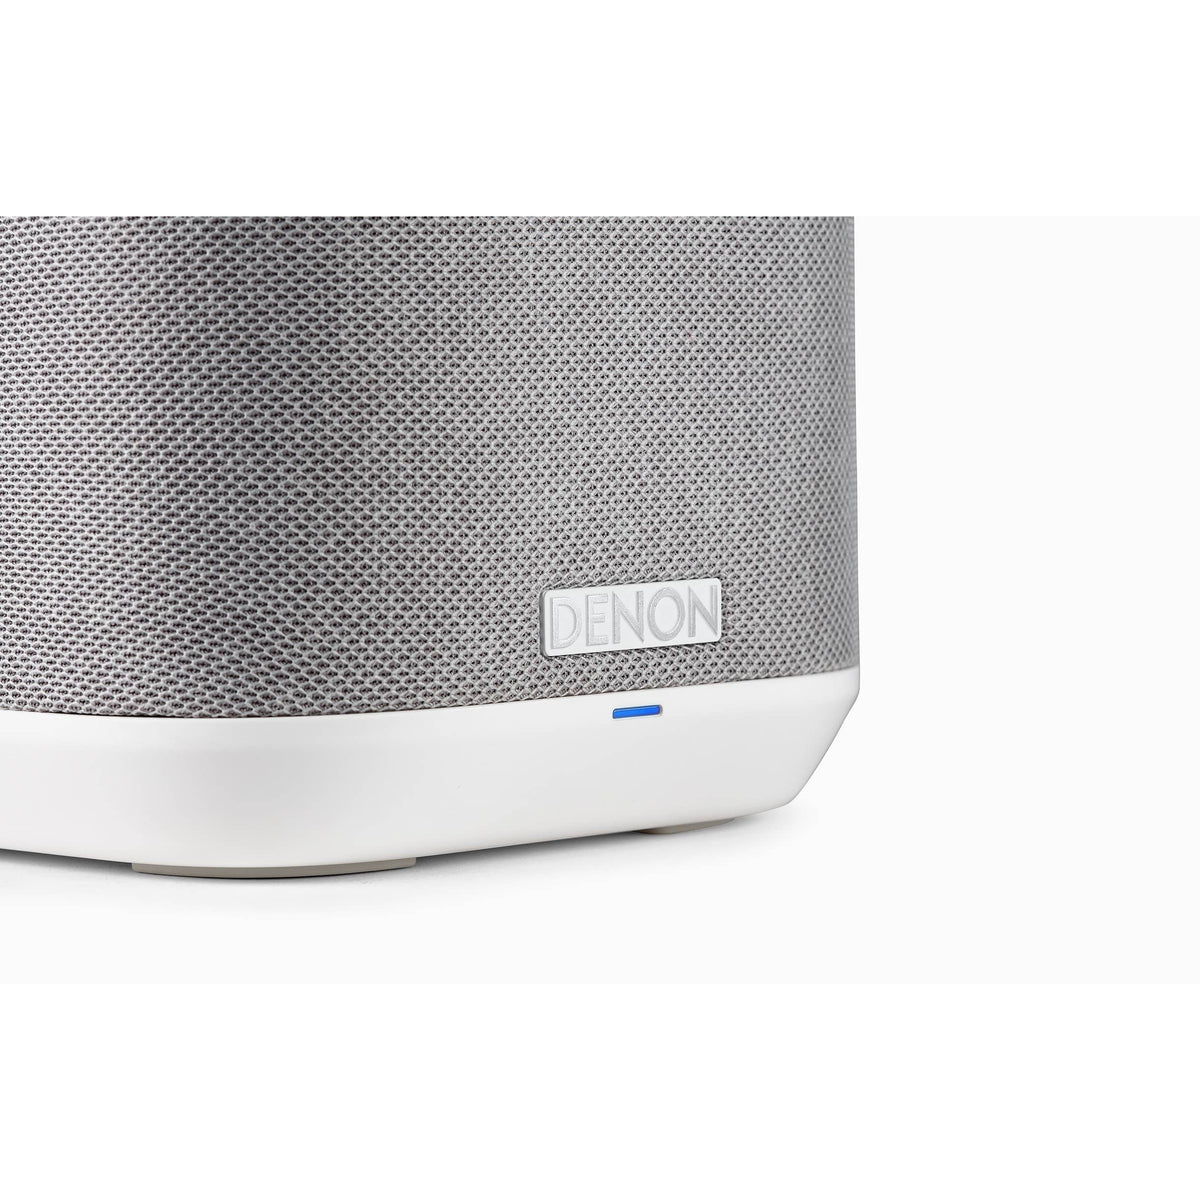 Denon Home 150 Compact Smart Speaker - White | DENONHOME150WTE2GB from Denon - DID Electrical